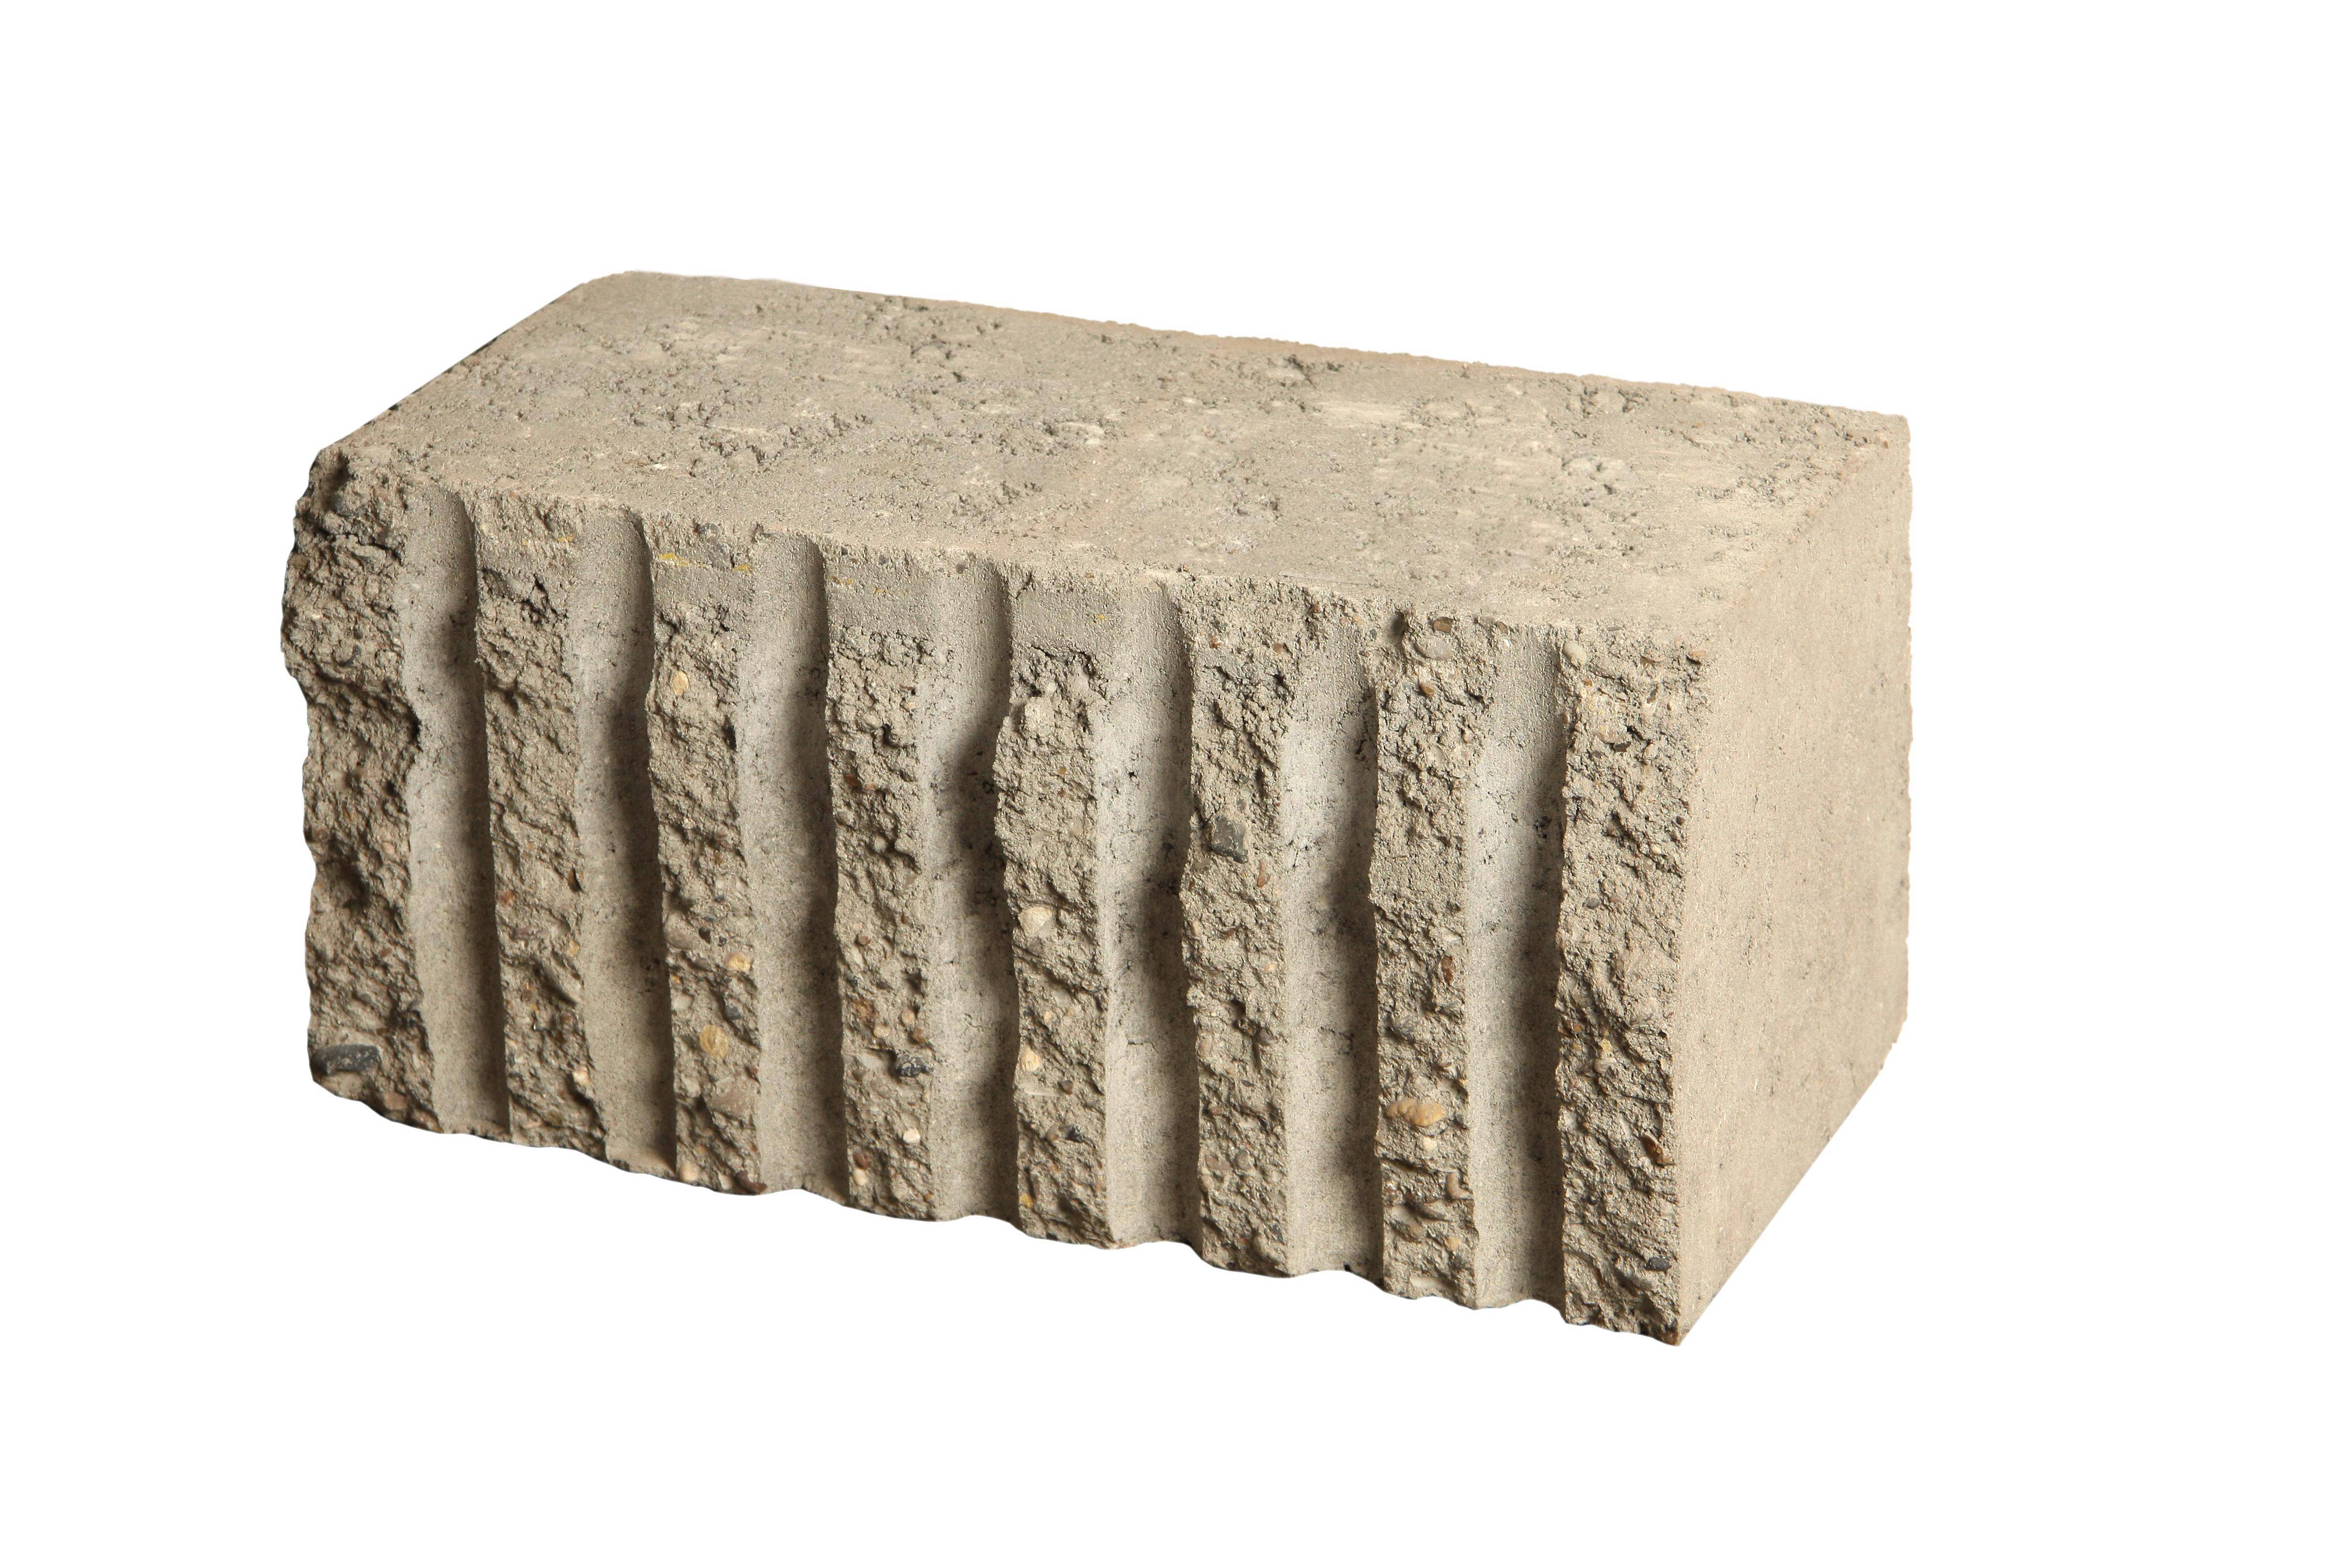 Дом из бетонных блоков: плюсы, минусы, особенности кладки